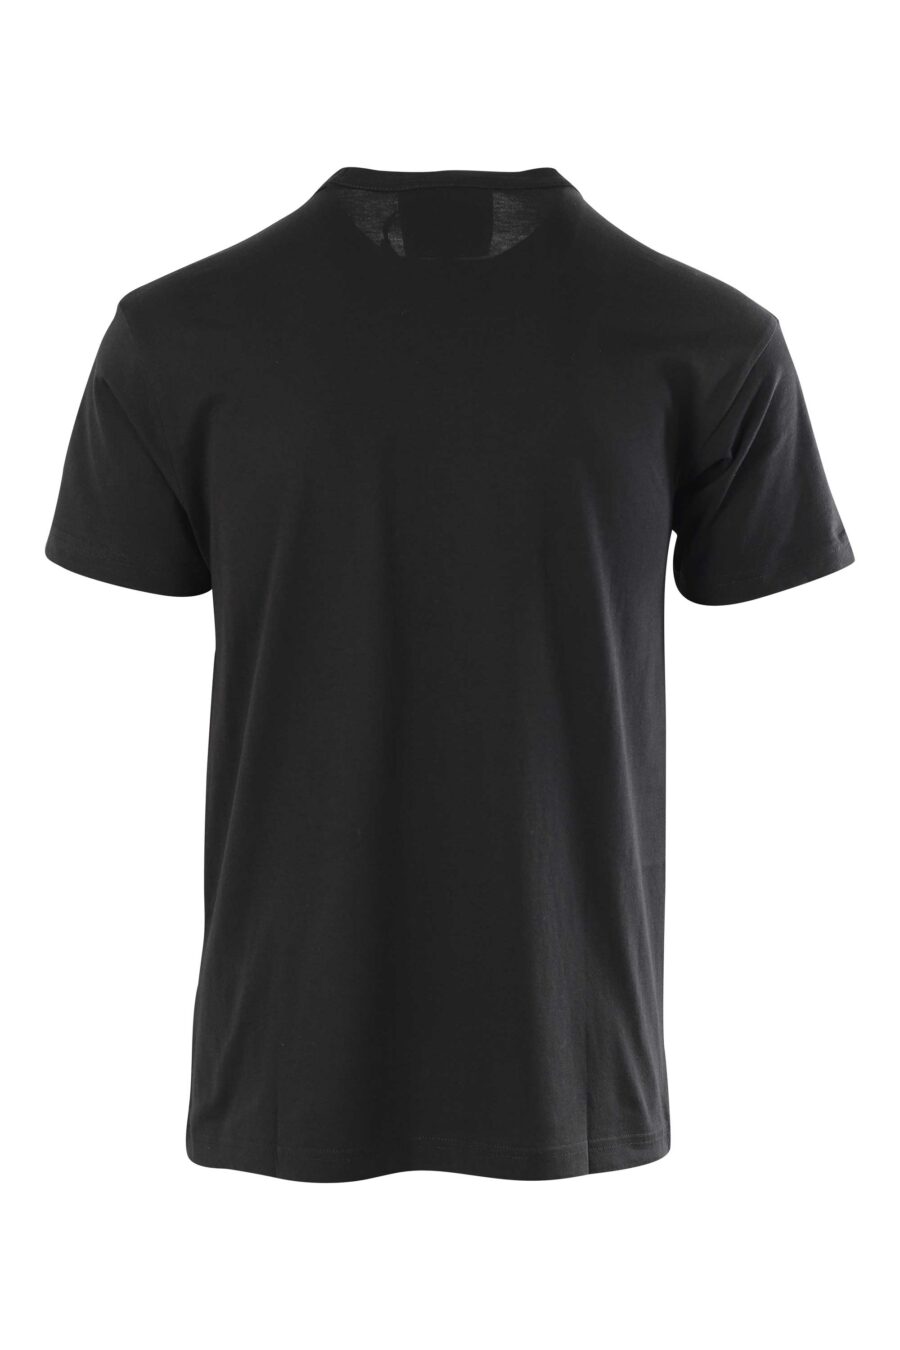 T-shirt noir avec maxilogue rond doré - 8052019325171 2